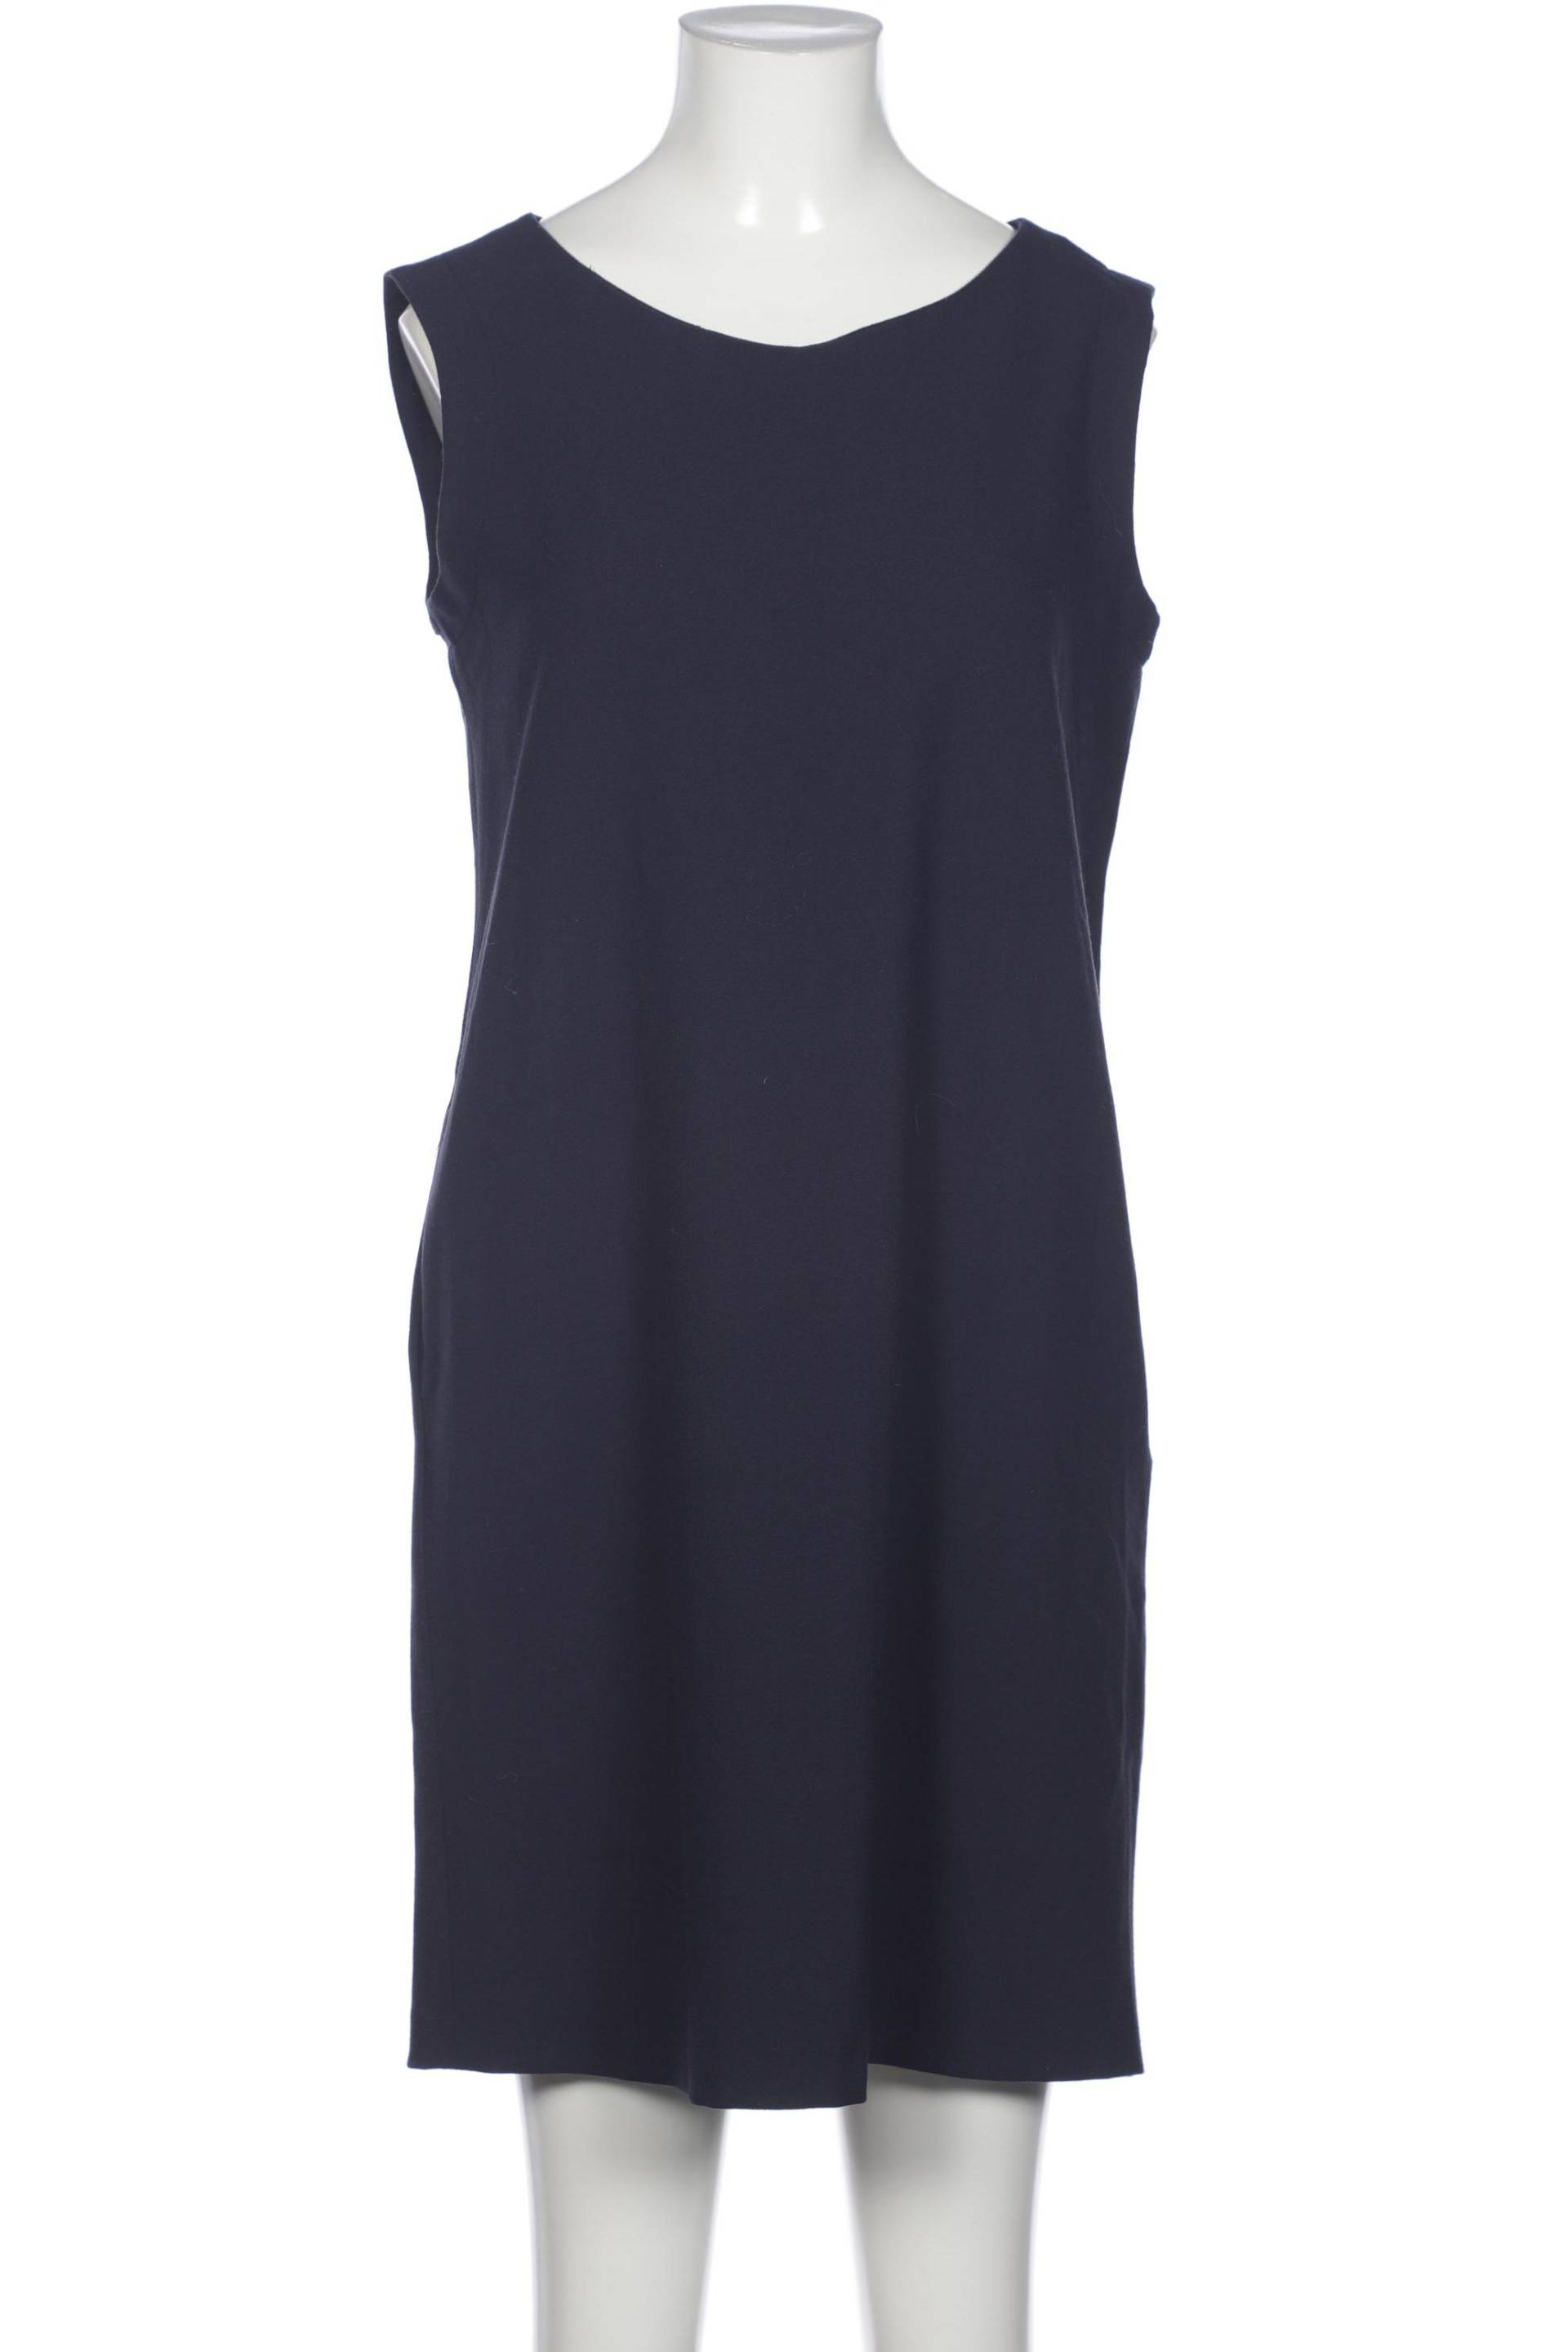 0039 Italy Damen Kleid, marineblau, Gr. 36 von 0039 italy